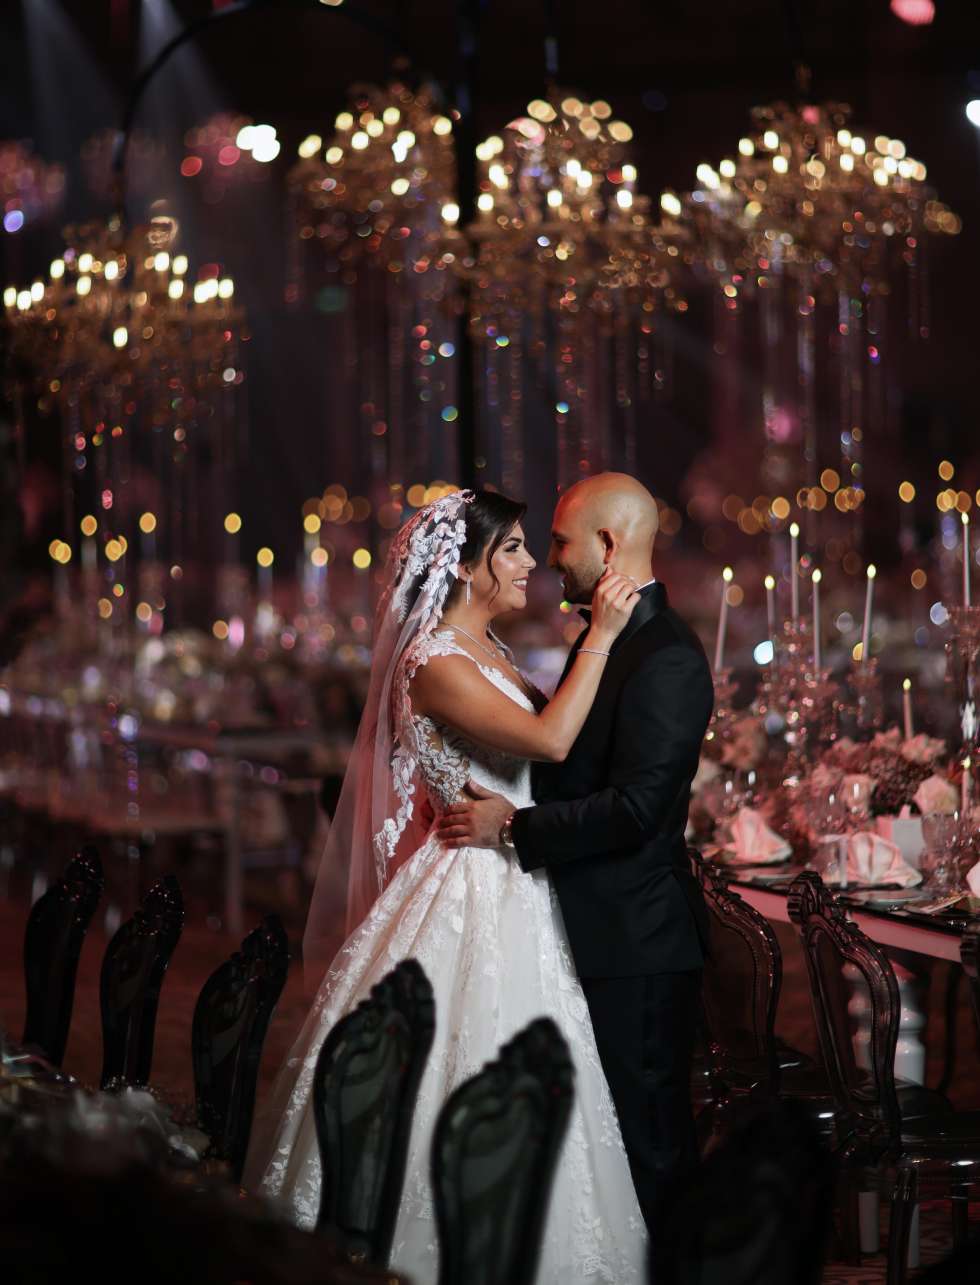 حفل زفاف من وحي الكريستال الكوني في أبو ظبي